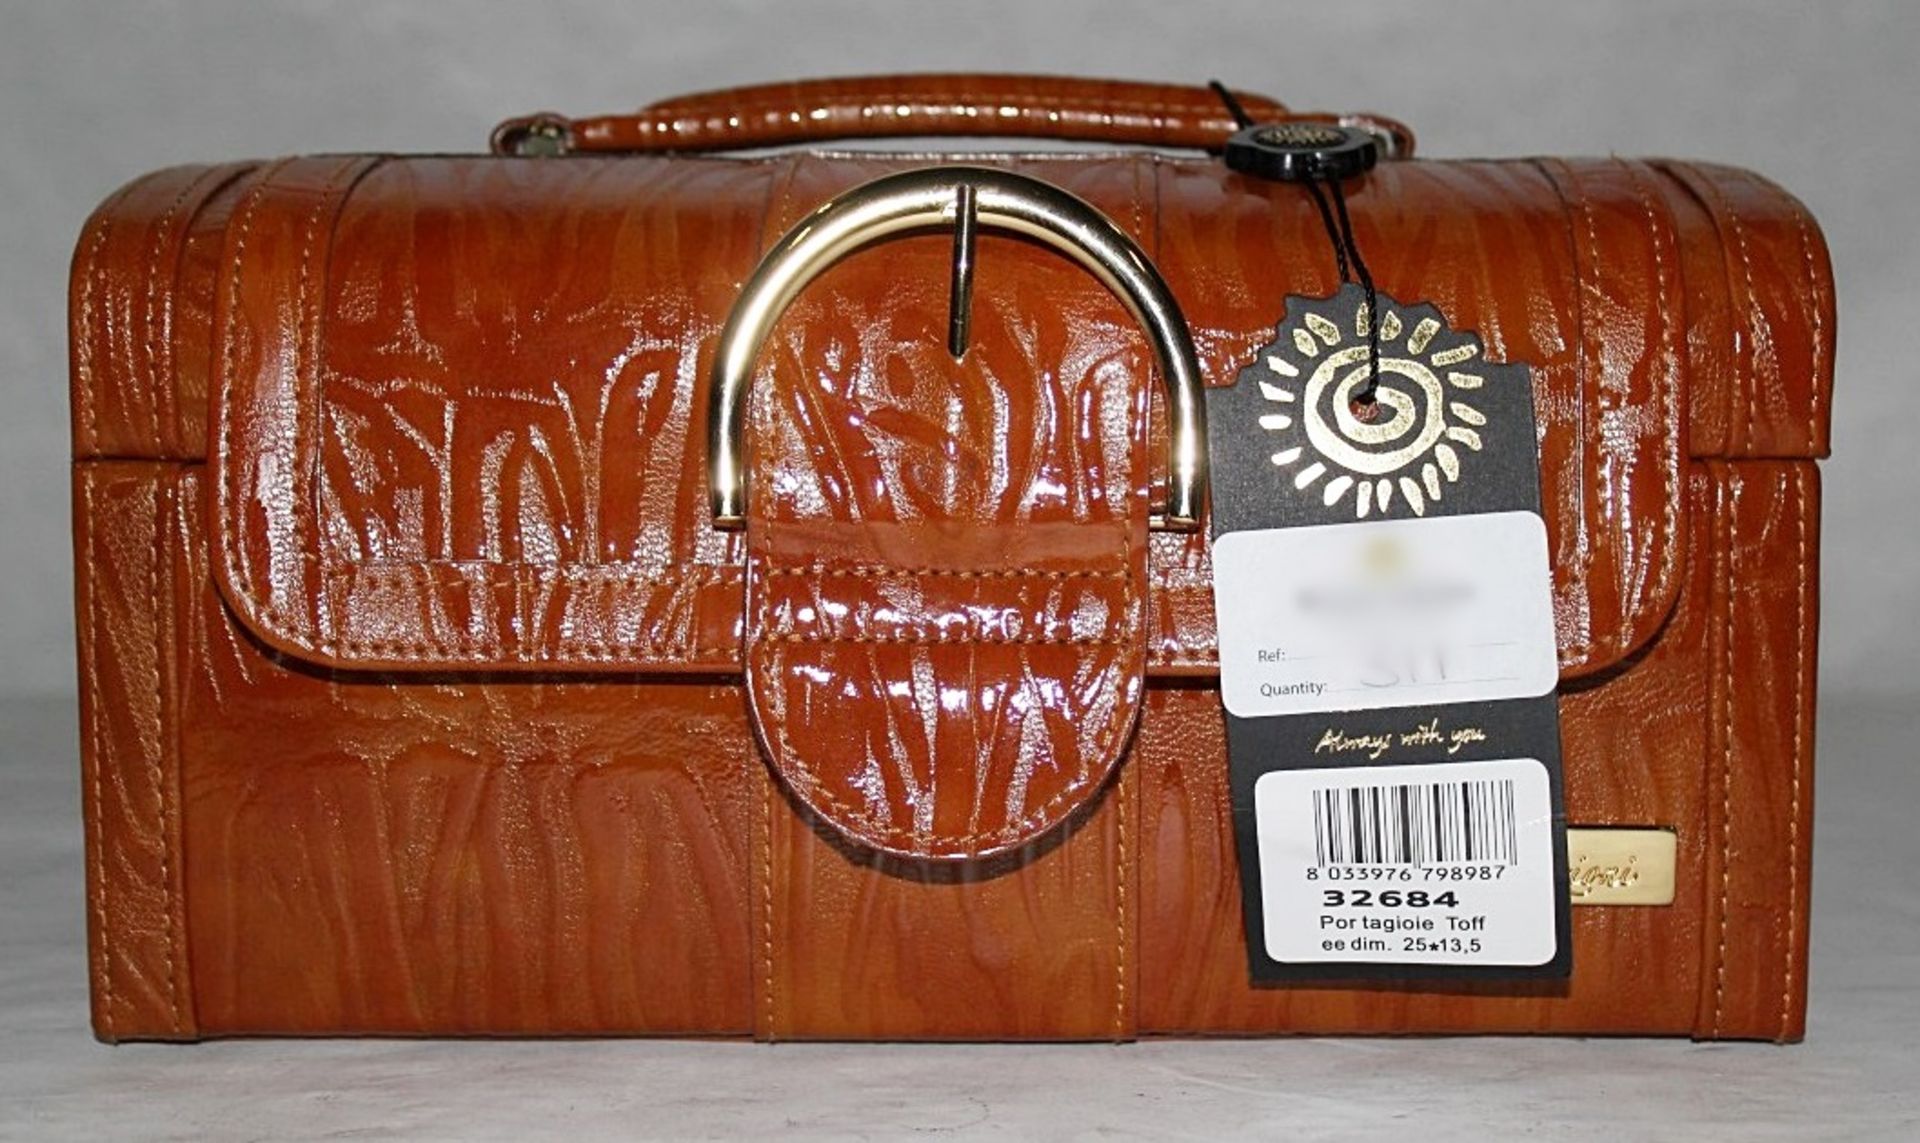 1 x "AB Collezioni" Italian Luxury Jewellery / Vanity Case With Travel Jewellery Wallet (32684) -